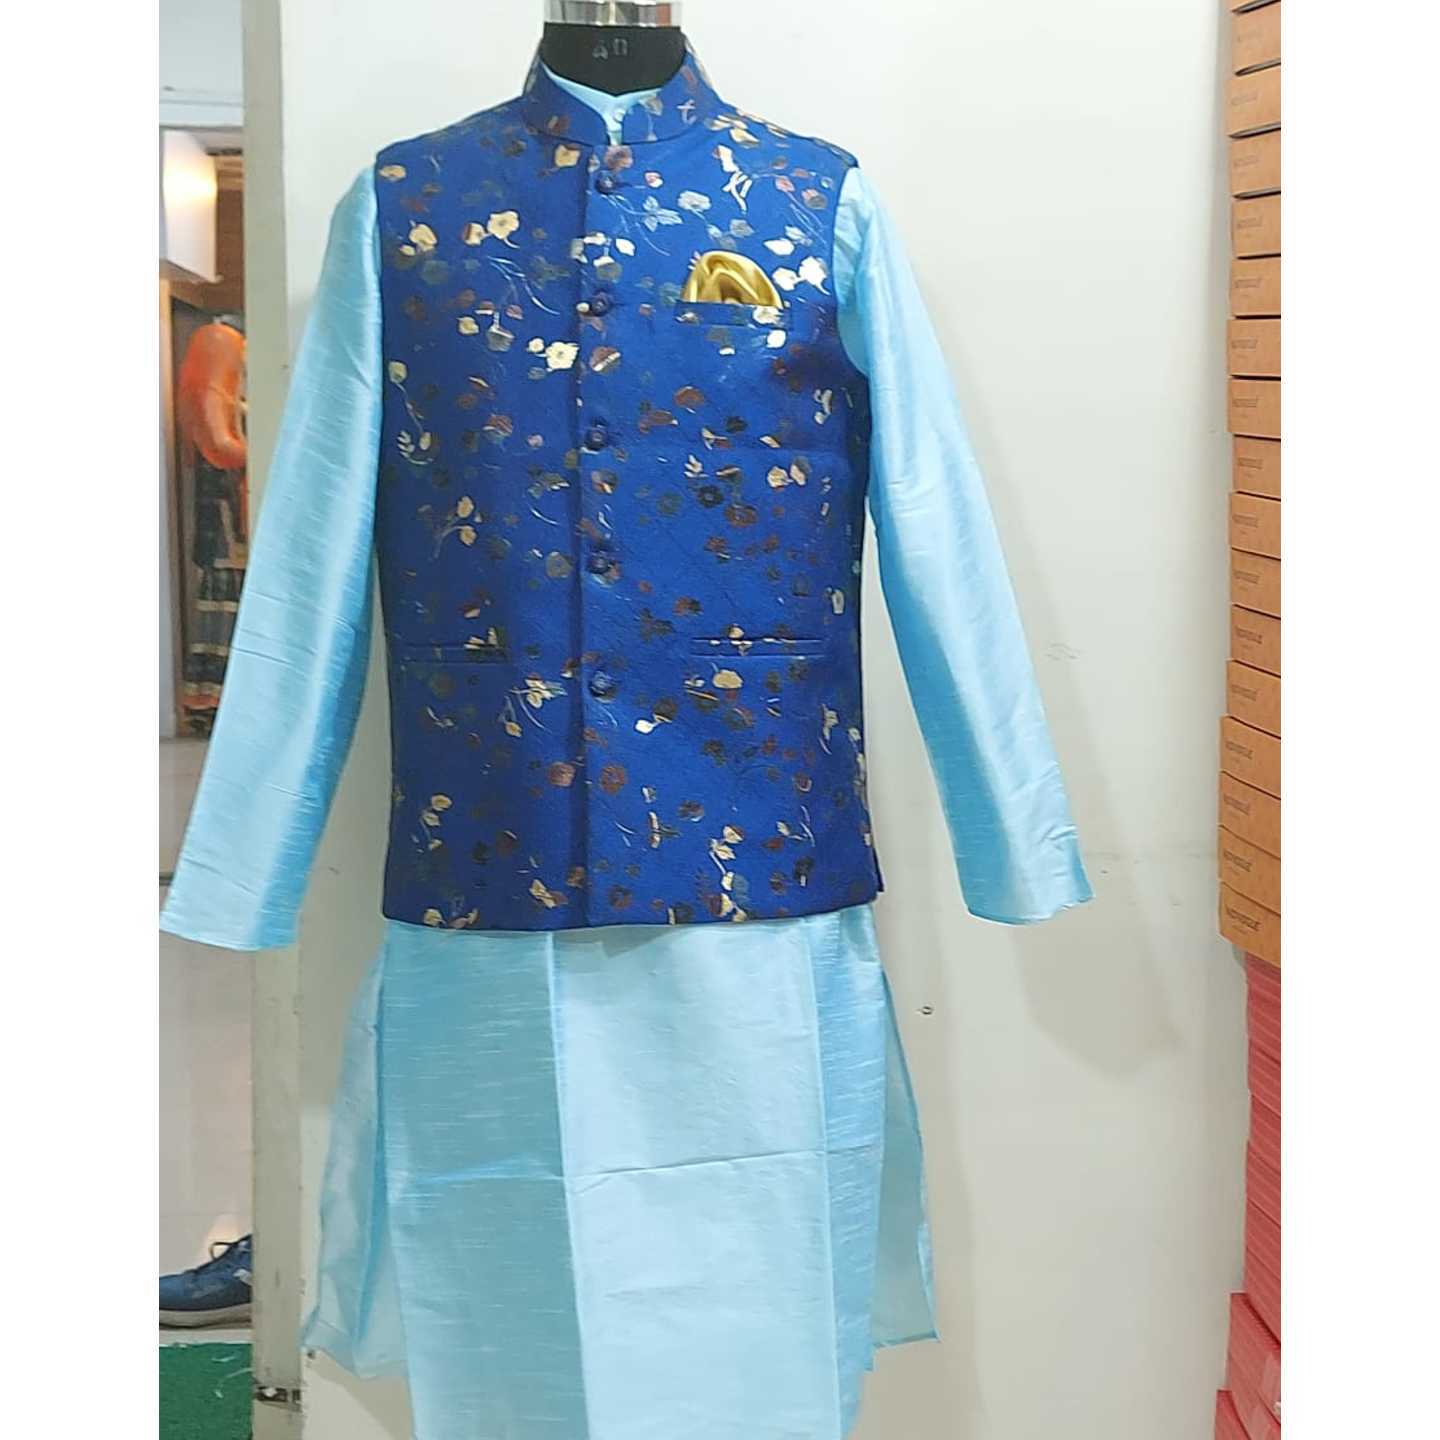 Designer ModiNehru Jacket with kurta pajama